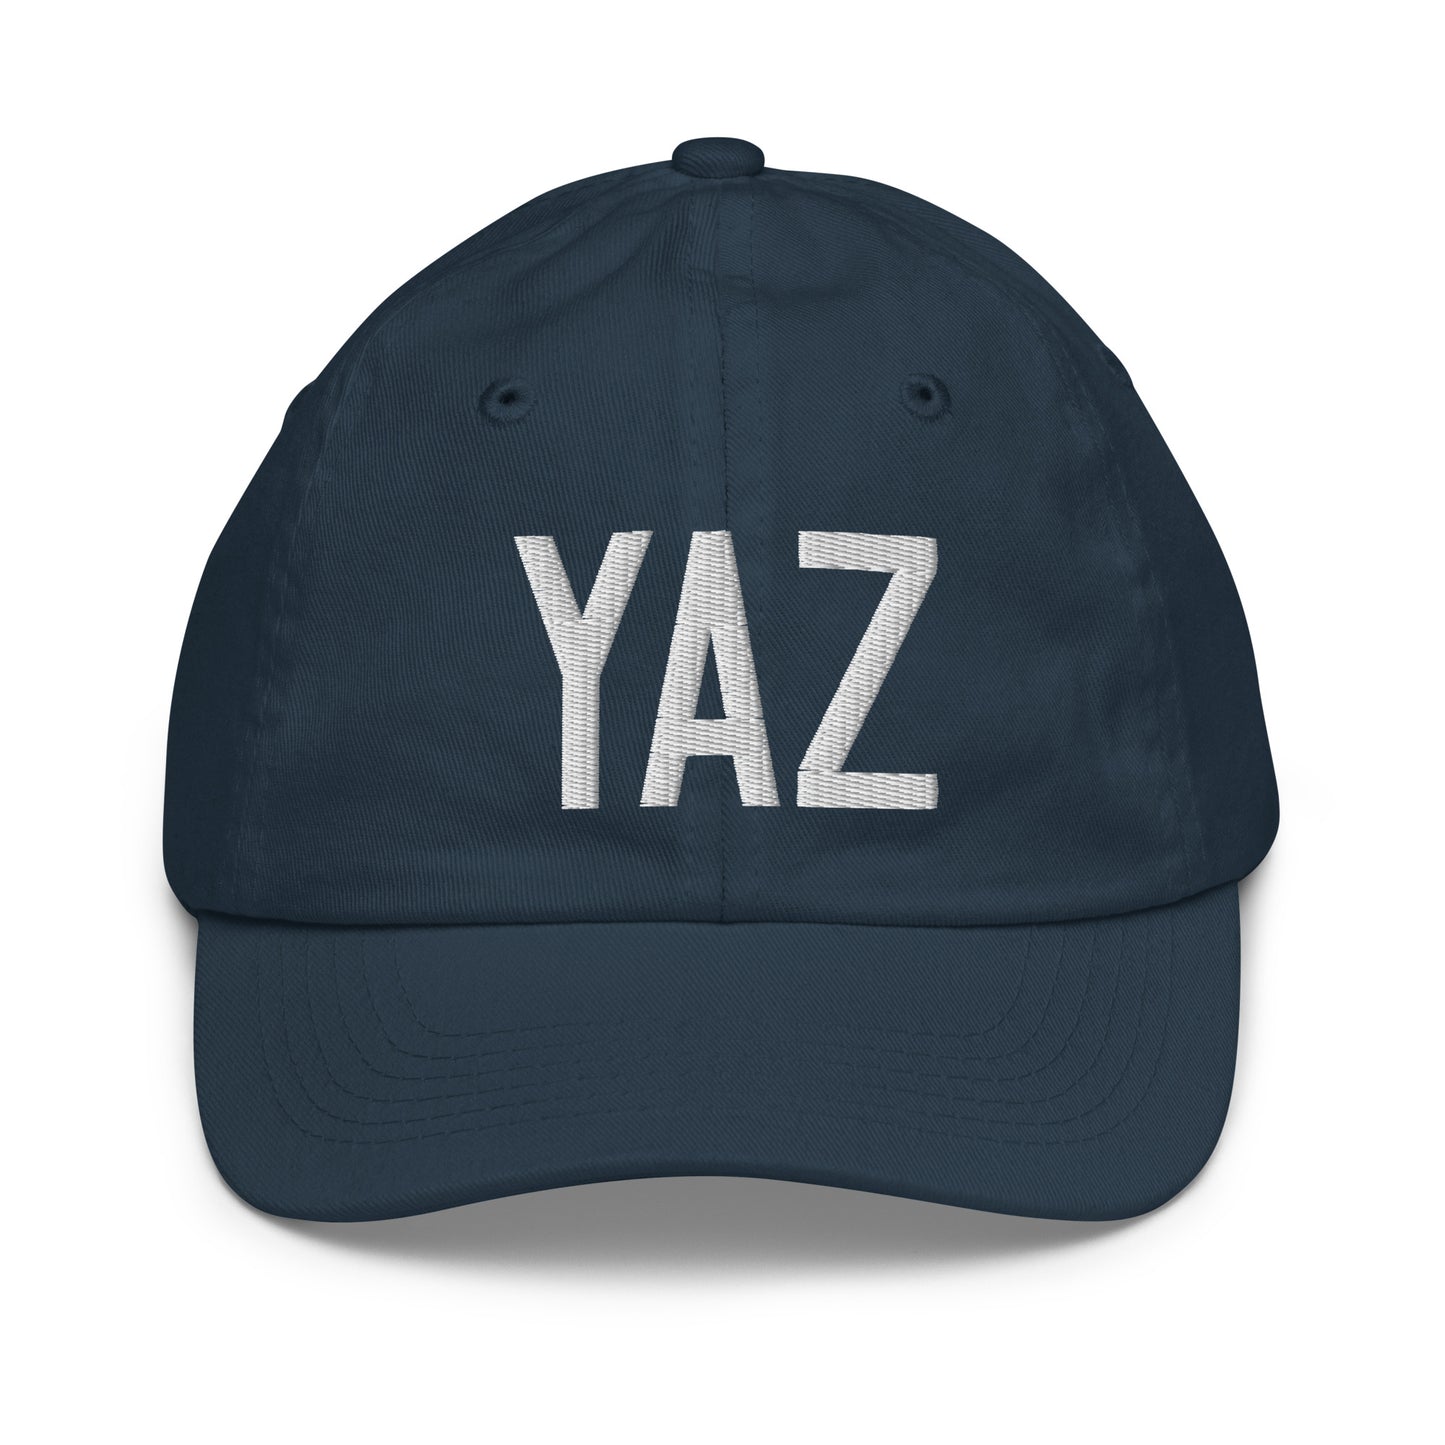 Airport Code Kid's Baseball Cap - White • YAZ Tofino • YHM Designs - Image 14